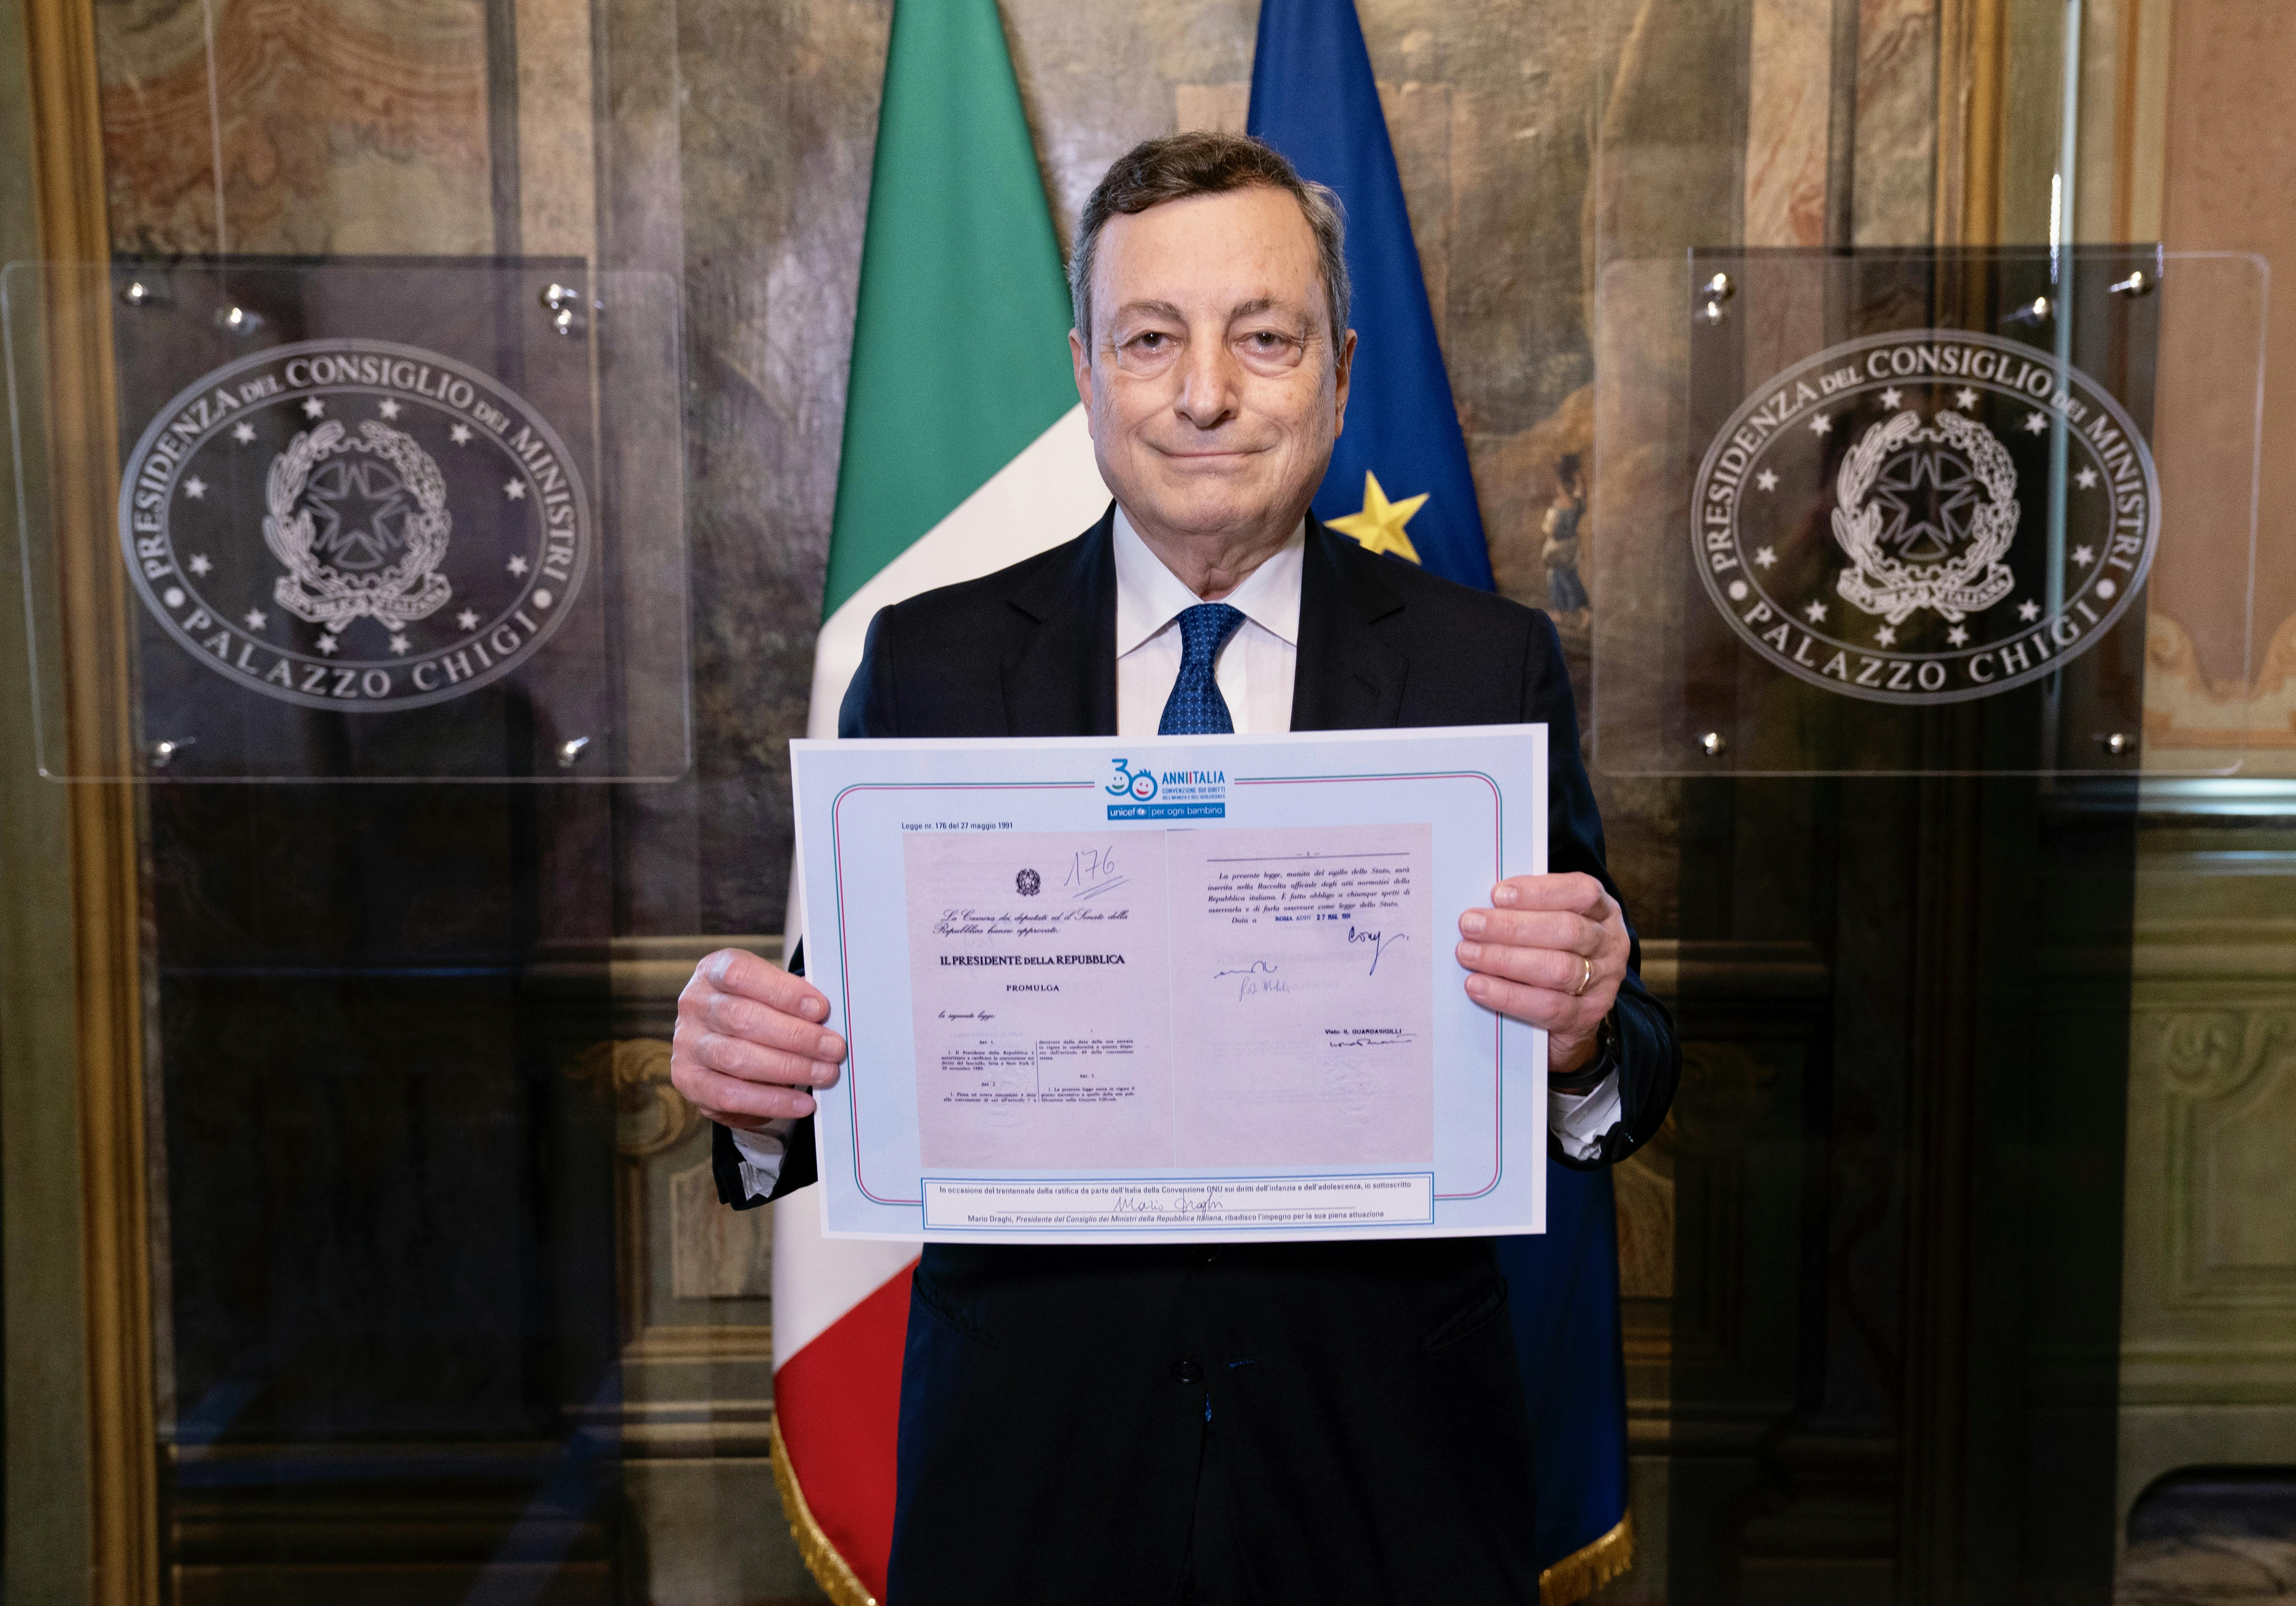 Il Presidente del Consiglio dei Ministri Mario Draghi ha firmato la riproduzione della legge di ratifica della Convenzione sui Diritti dell’infanzia e dell’adolescenza a 30 anni dall’approvazione in Italia